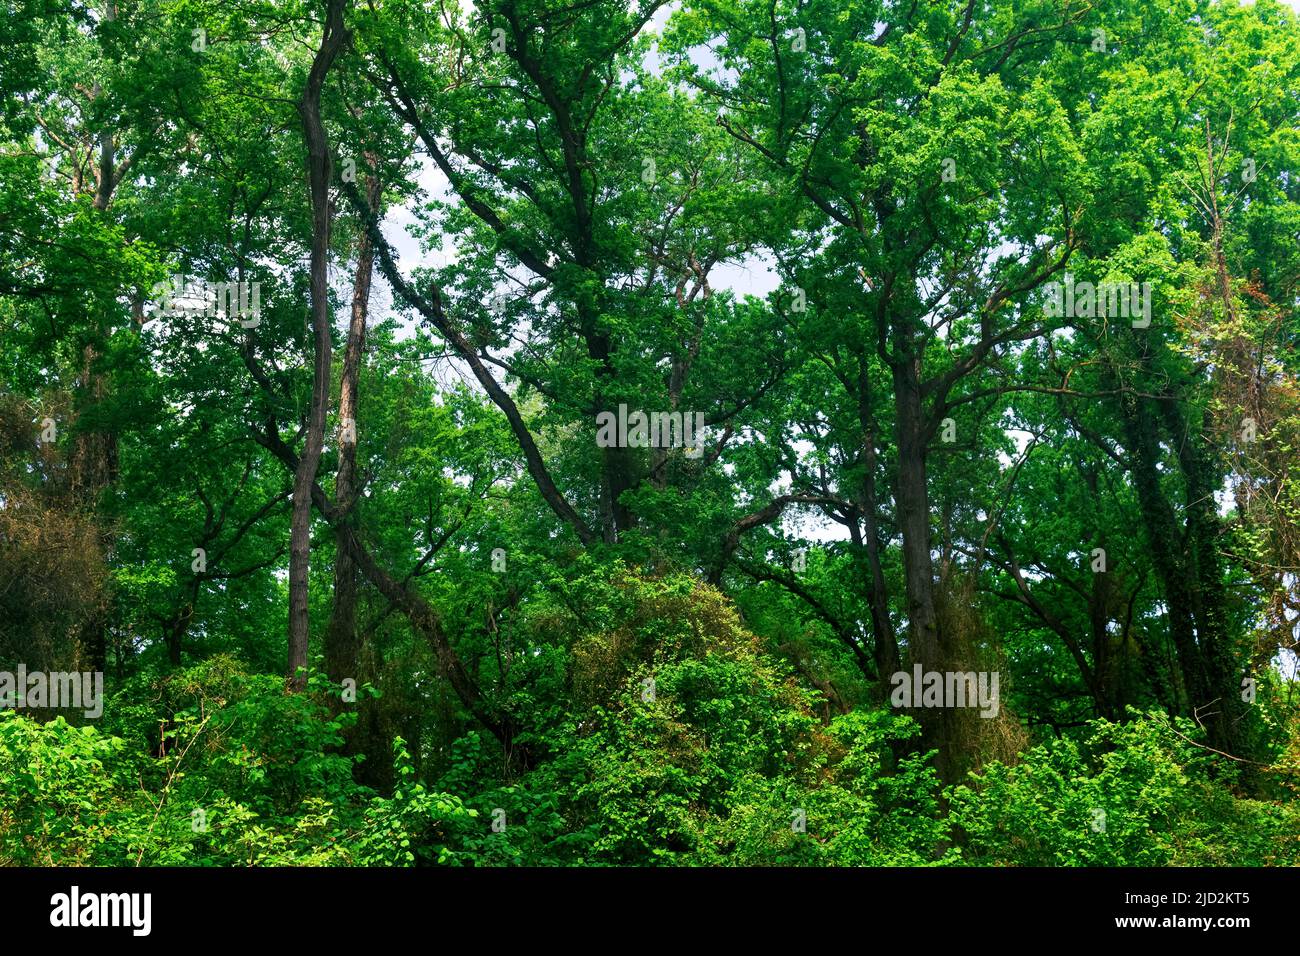 corone e tronchi di alberi alti in una foresta di liana subtropicale a foglia larga Foto Stock